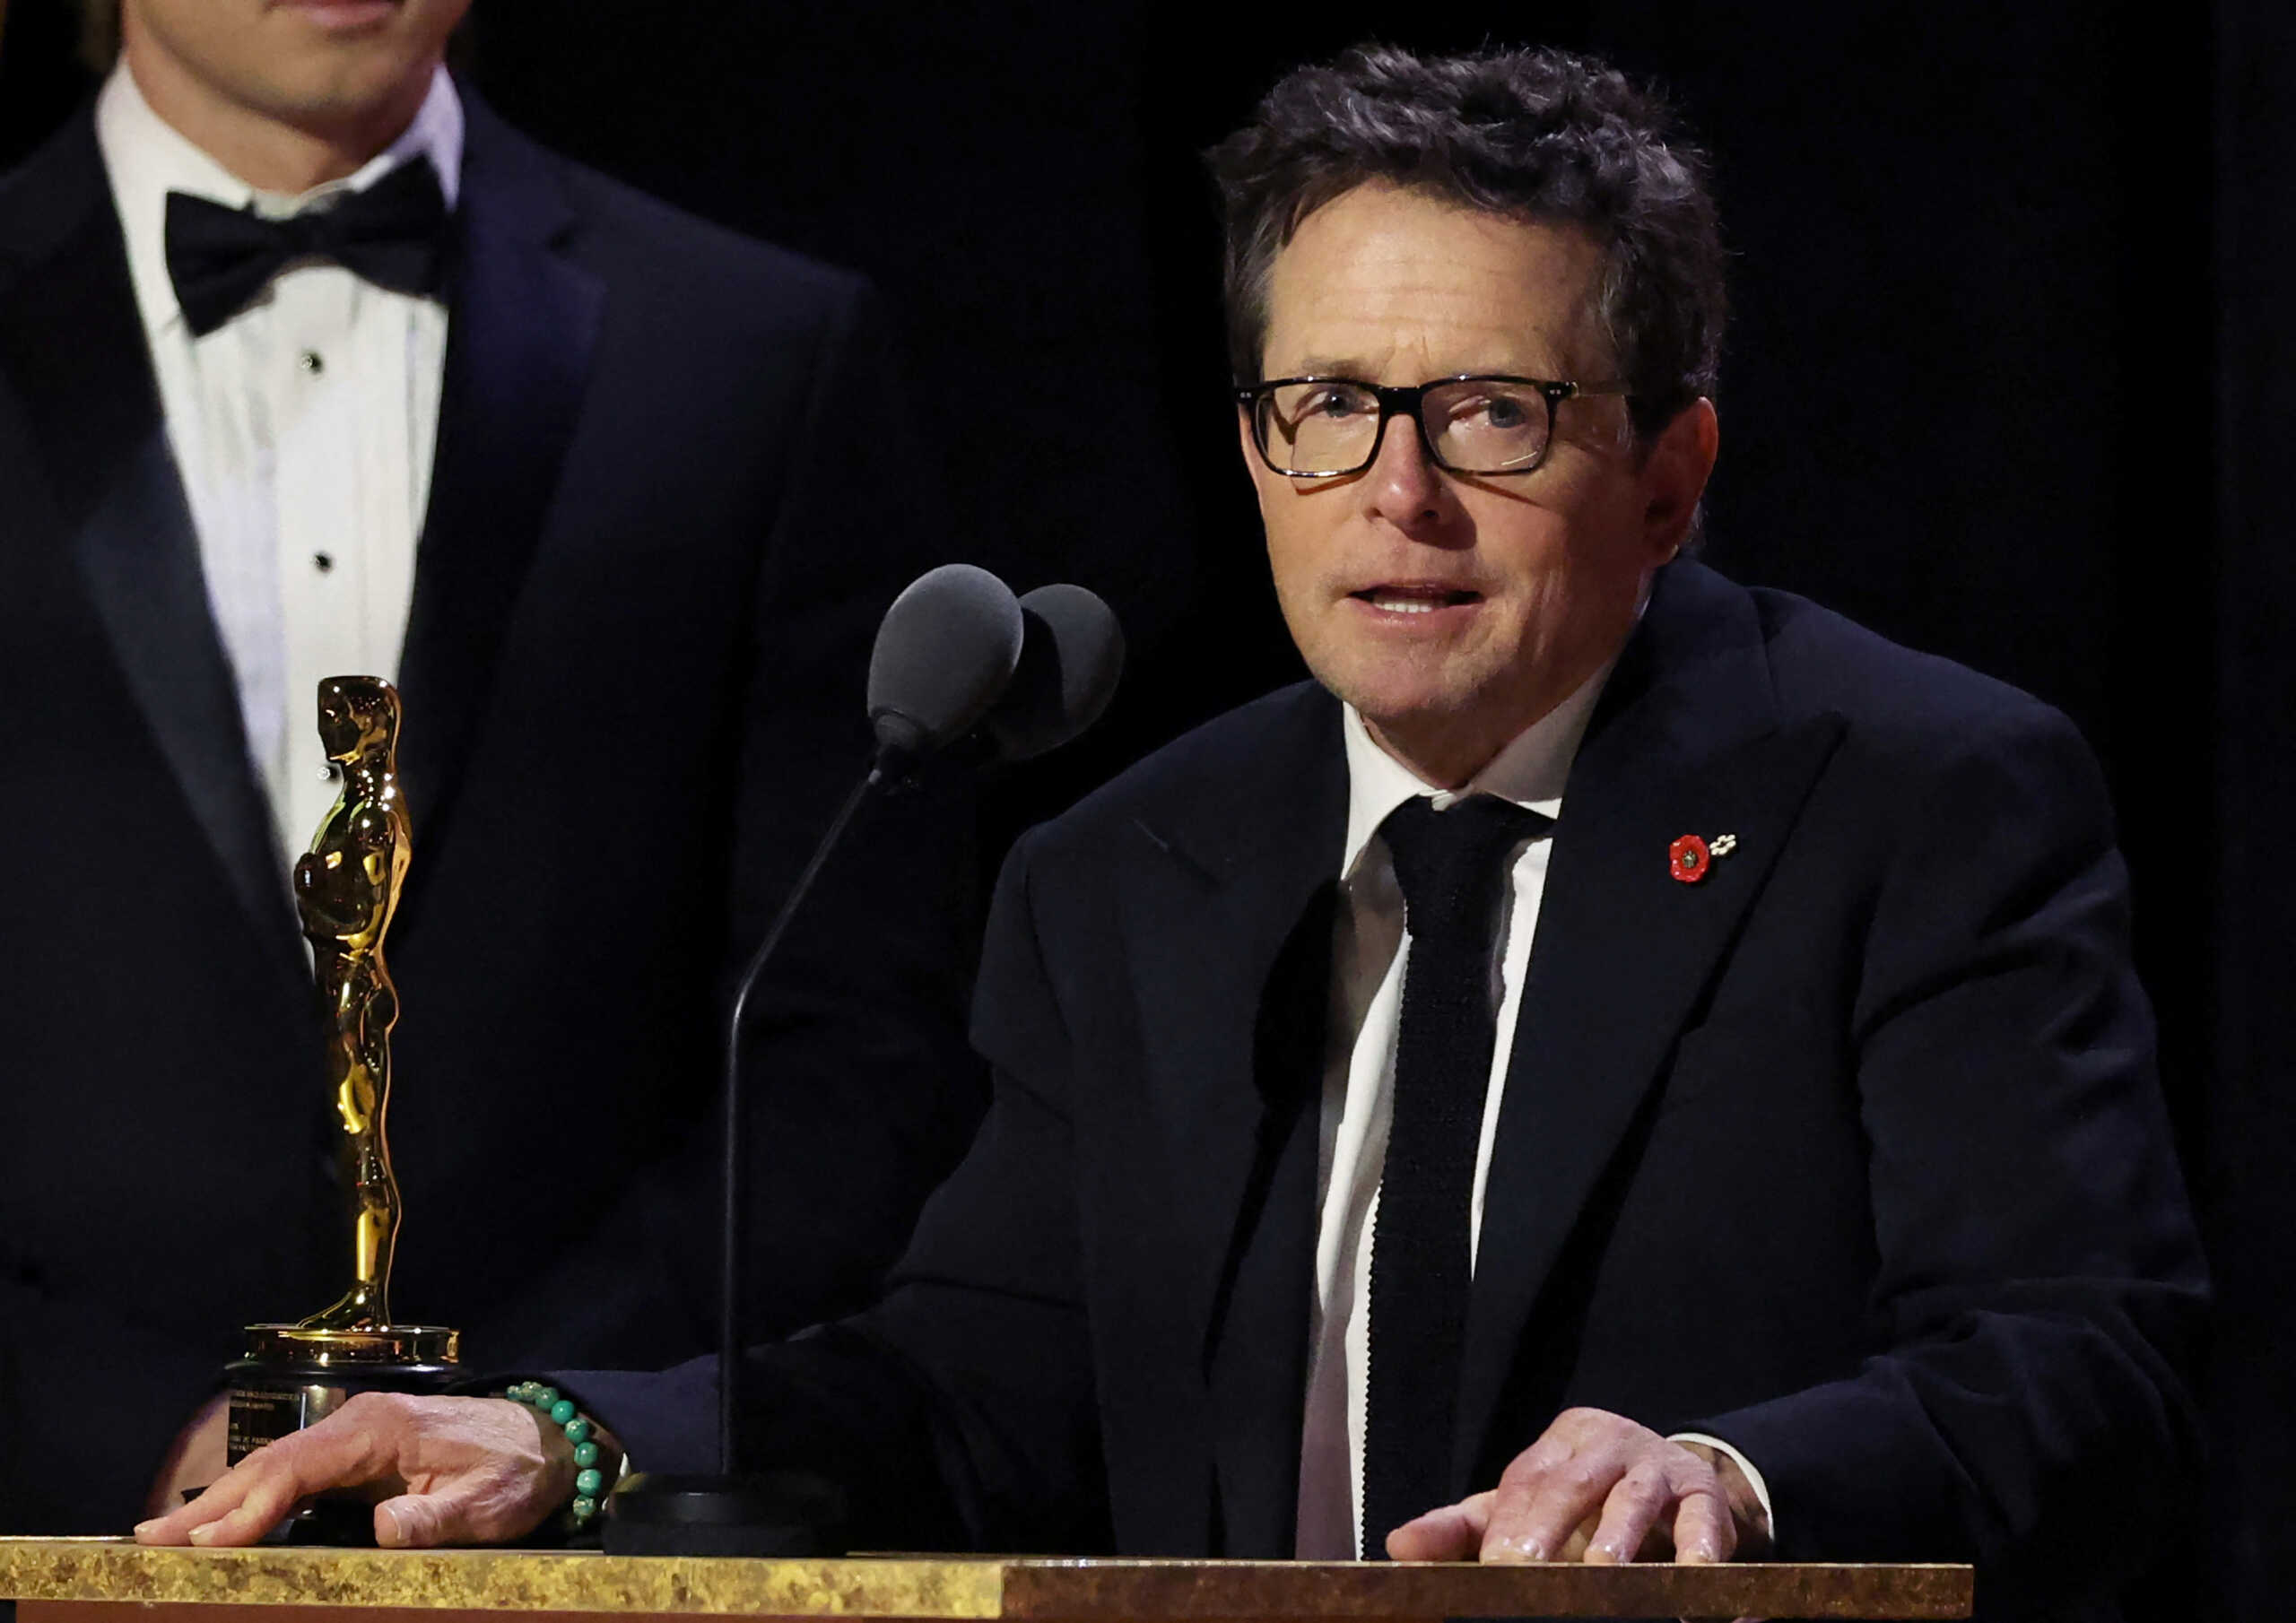 Το ντοκιμαντέρ του Μάικλ Τζ. Φοξ είναι υποψήφιο για επτά βραβεία Emmy